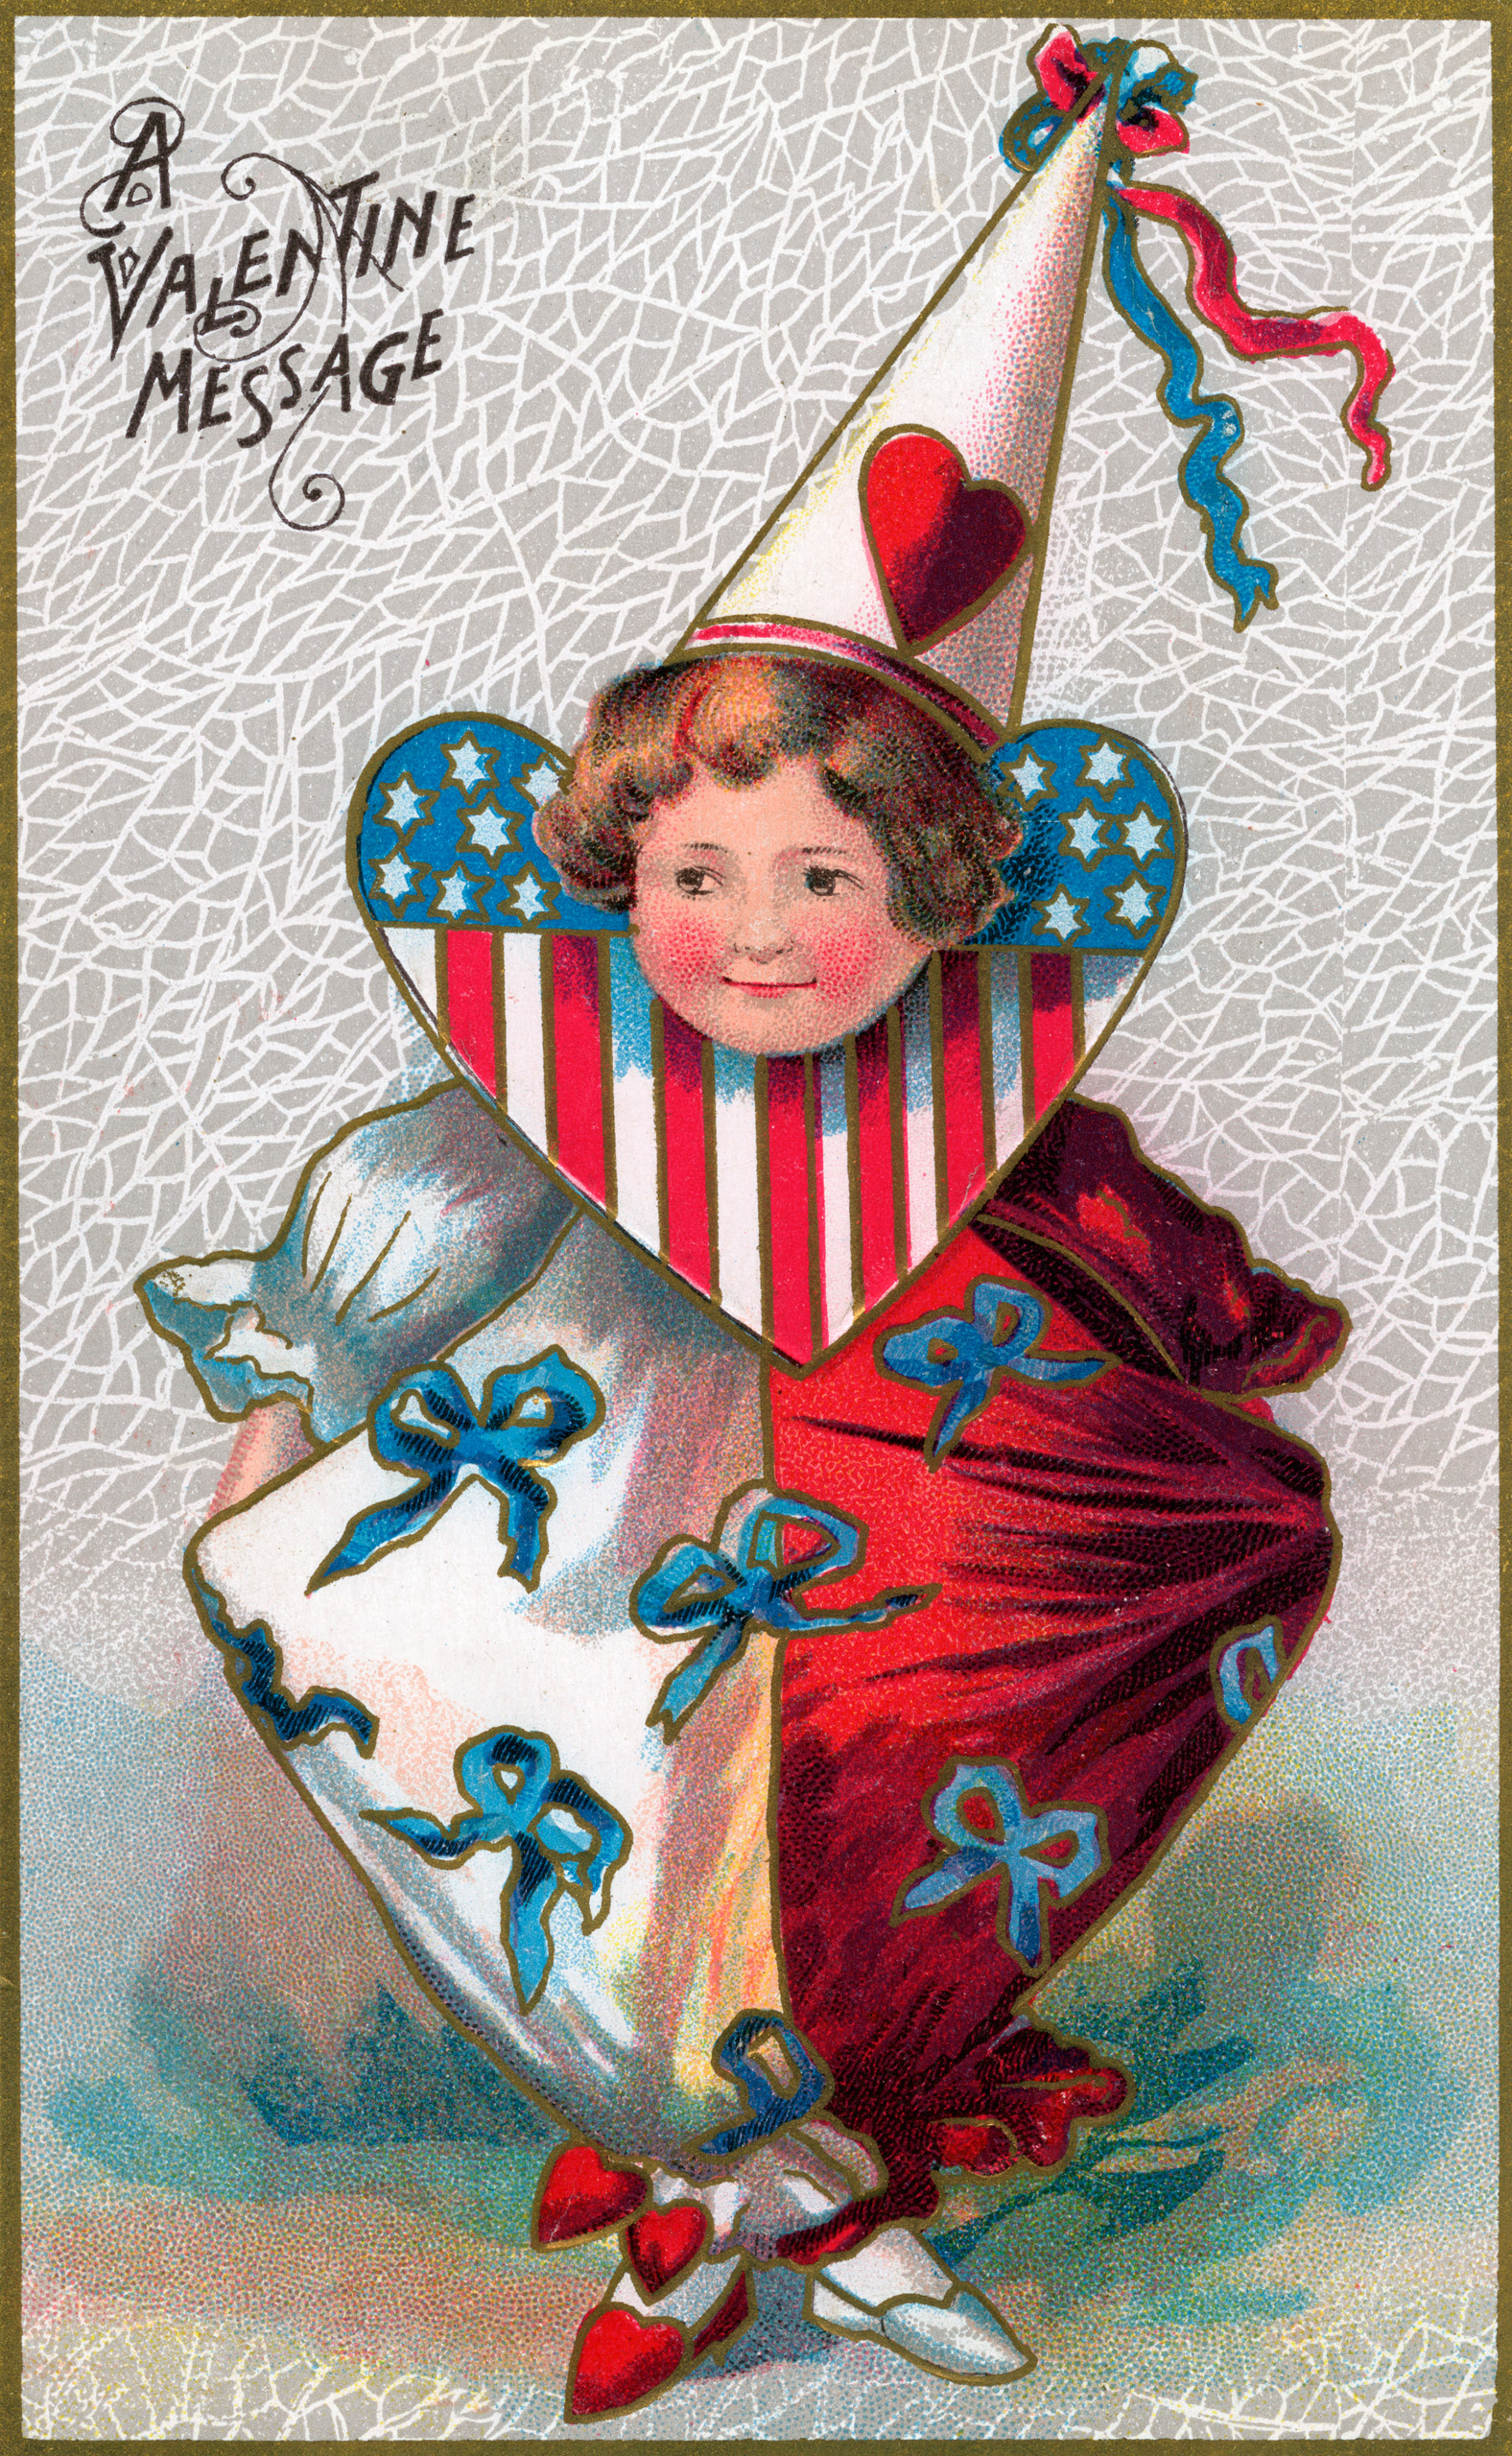 Vintage Valentine's Day card circa 1907.